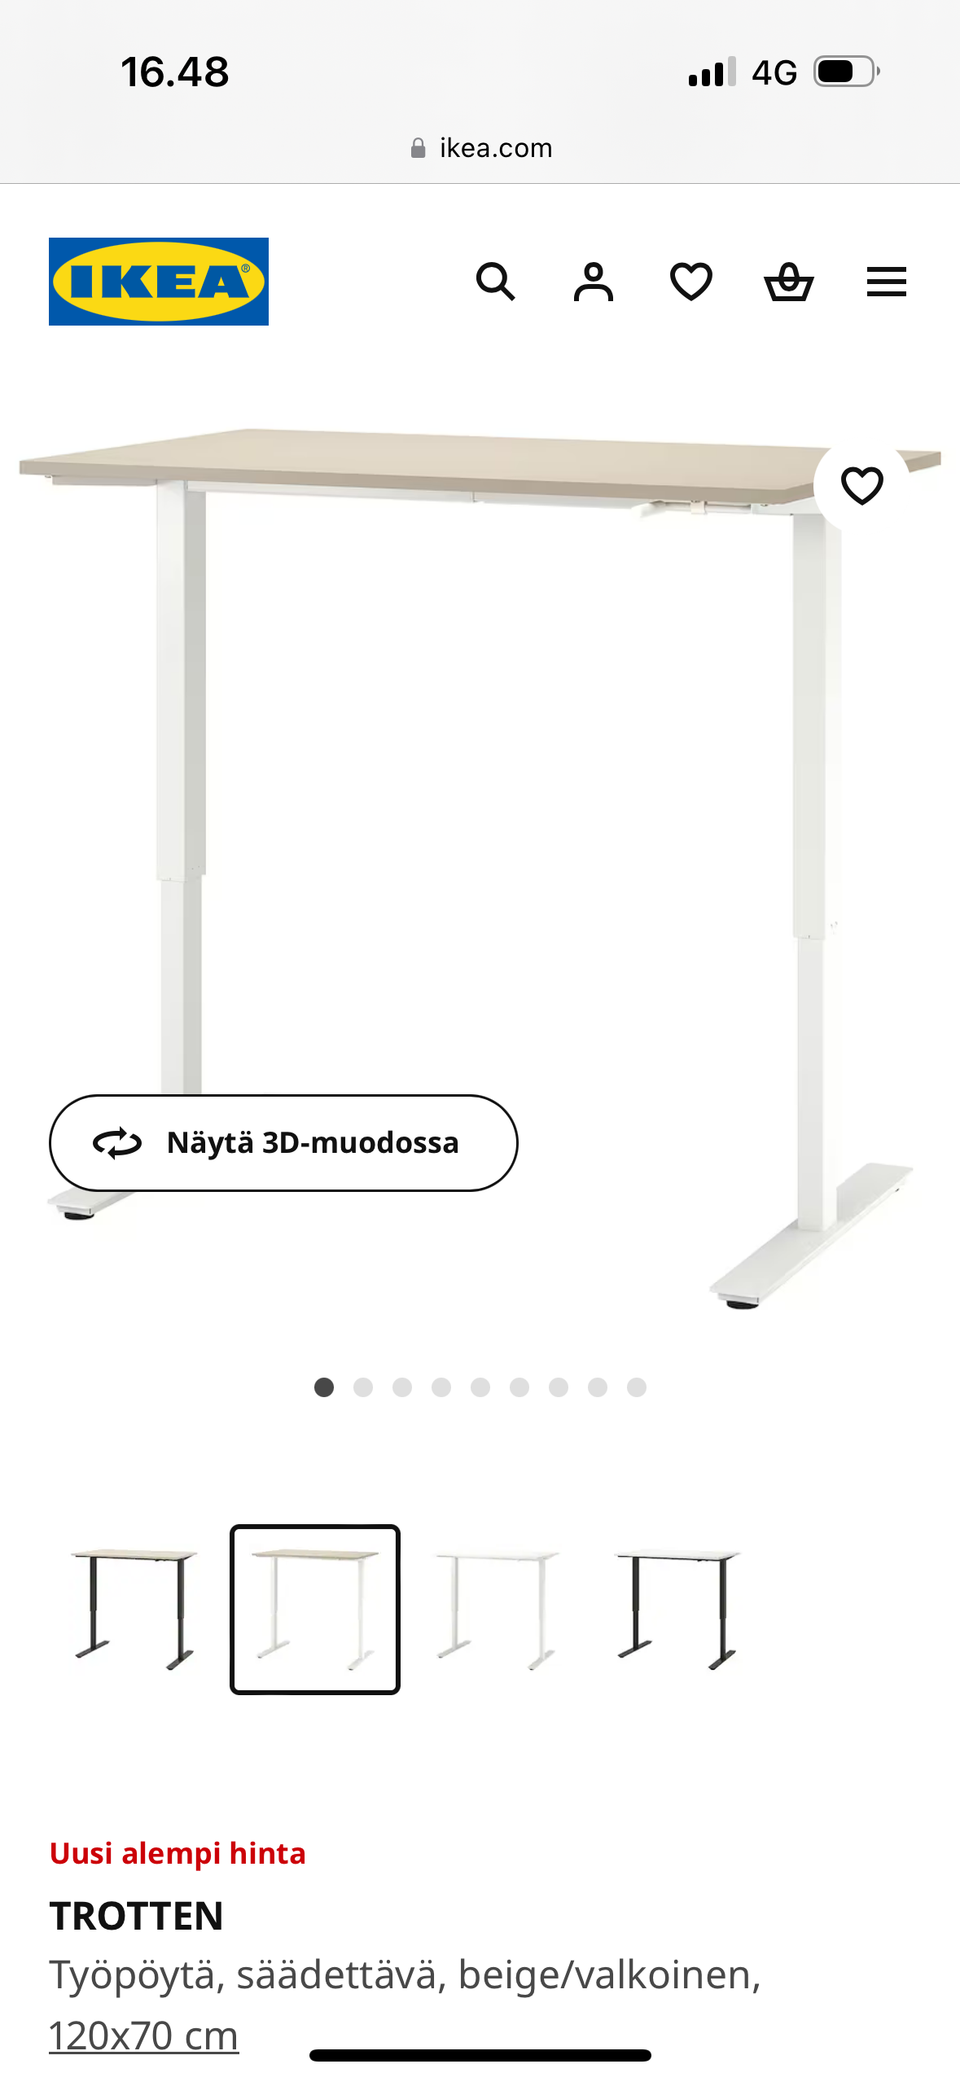 Myydään Ikea Trotten veivattava työpöytä